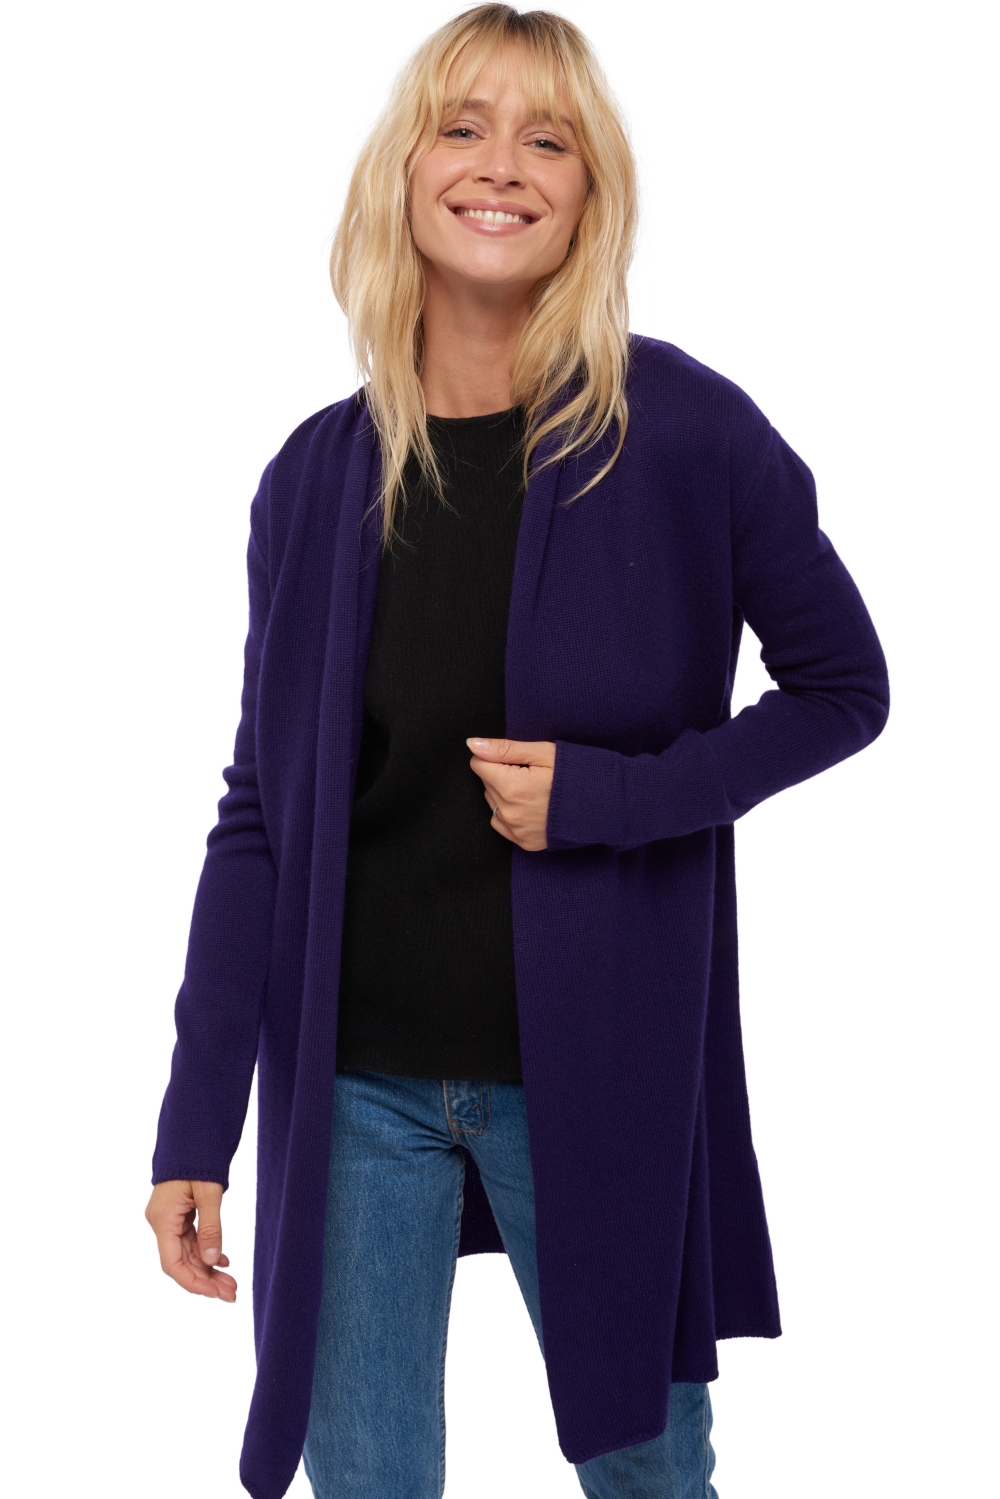 Cashmere cashmere donna maglioni in filato grosso perla deep purple 3xl